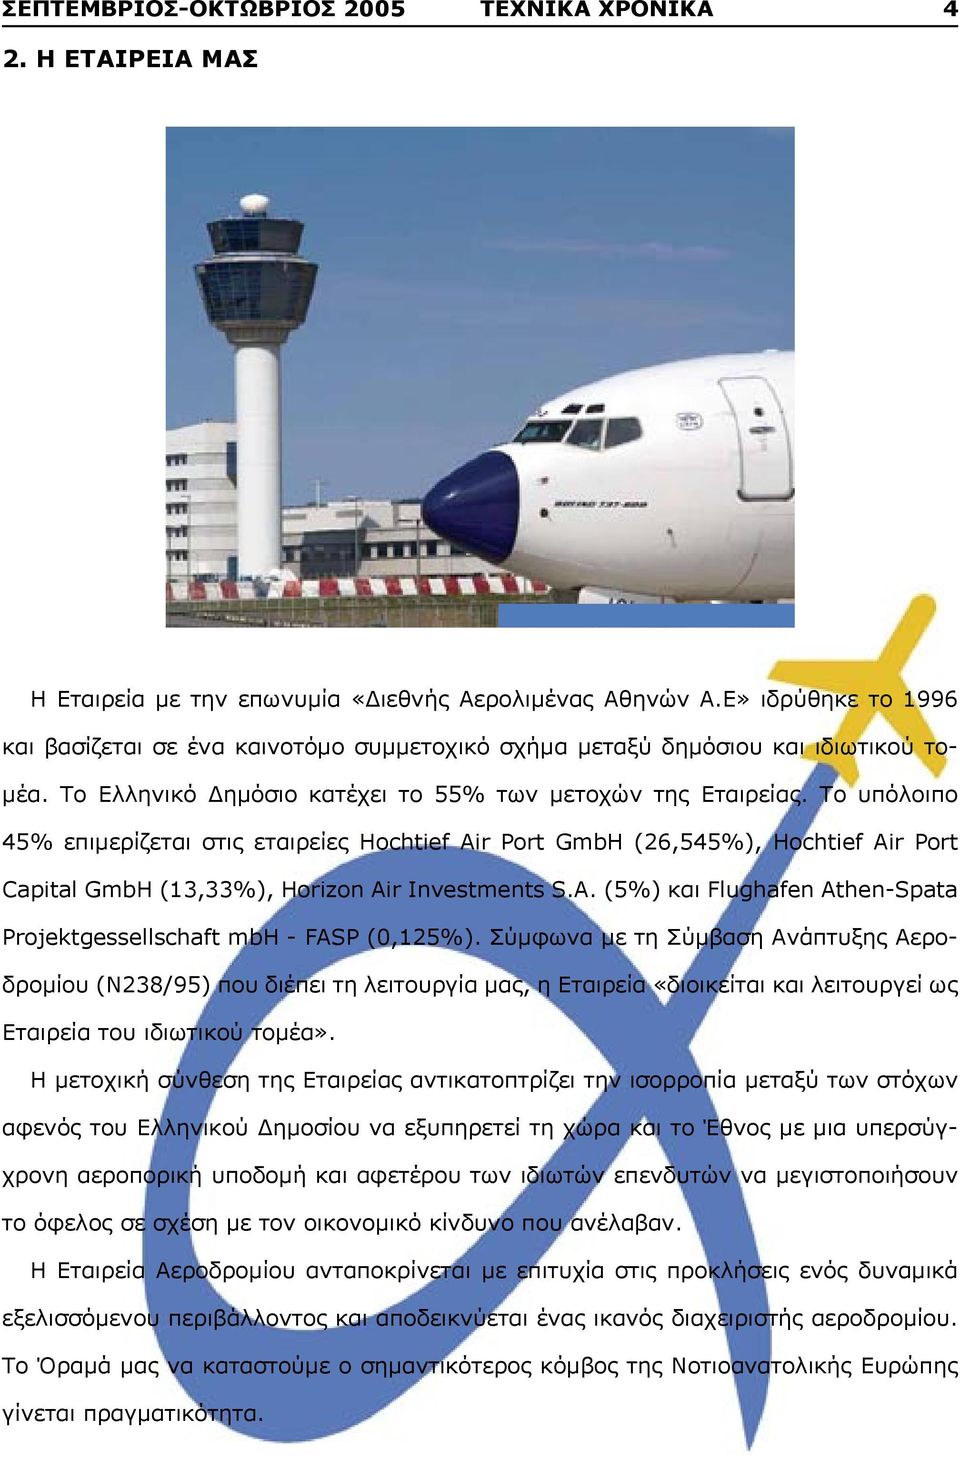 Το υπόλοιπο 45% επιμερίζεται στις εταιρείες Hochtief Air Port GmbH (26,545%), Hochtief Air Port Capital GmbH (13,33%), Horizon Air Investments S.A. (5%) και Flughafen Athen-Spata Projektgessellschaft mbh - FASP (0,125%).